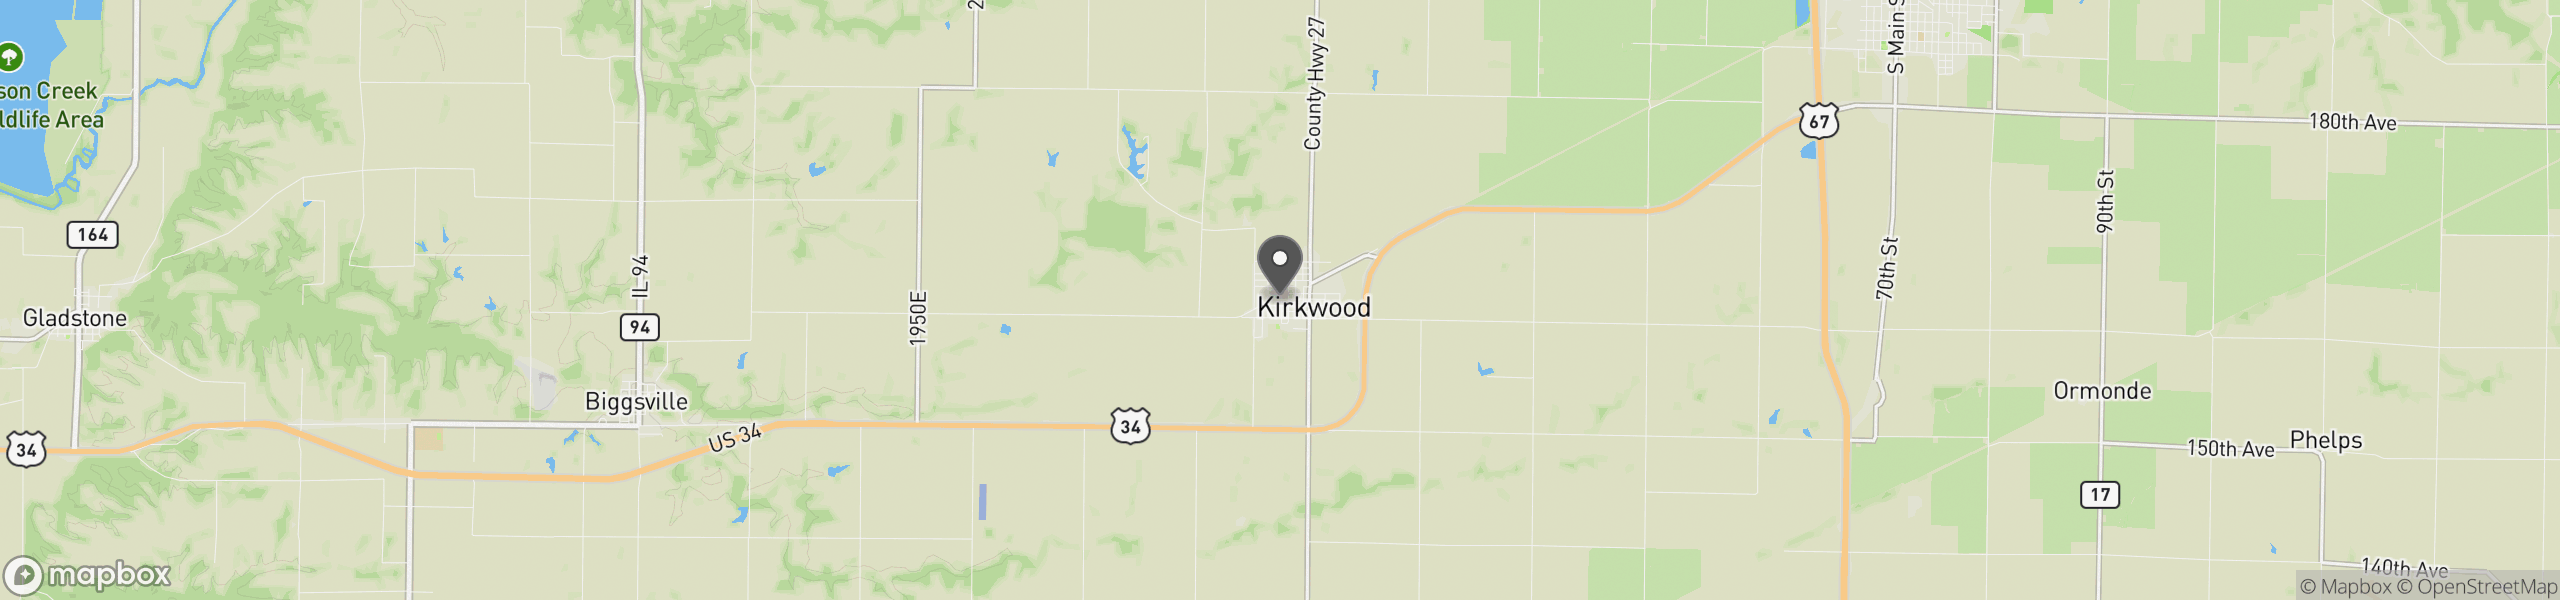 Kirkwood, IL 61447